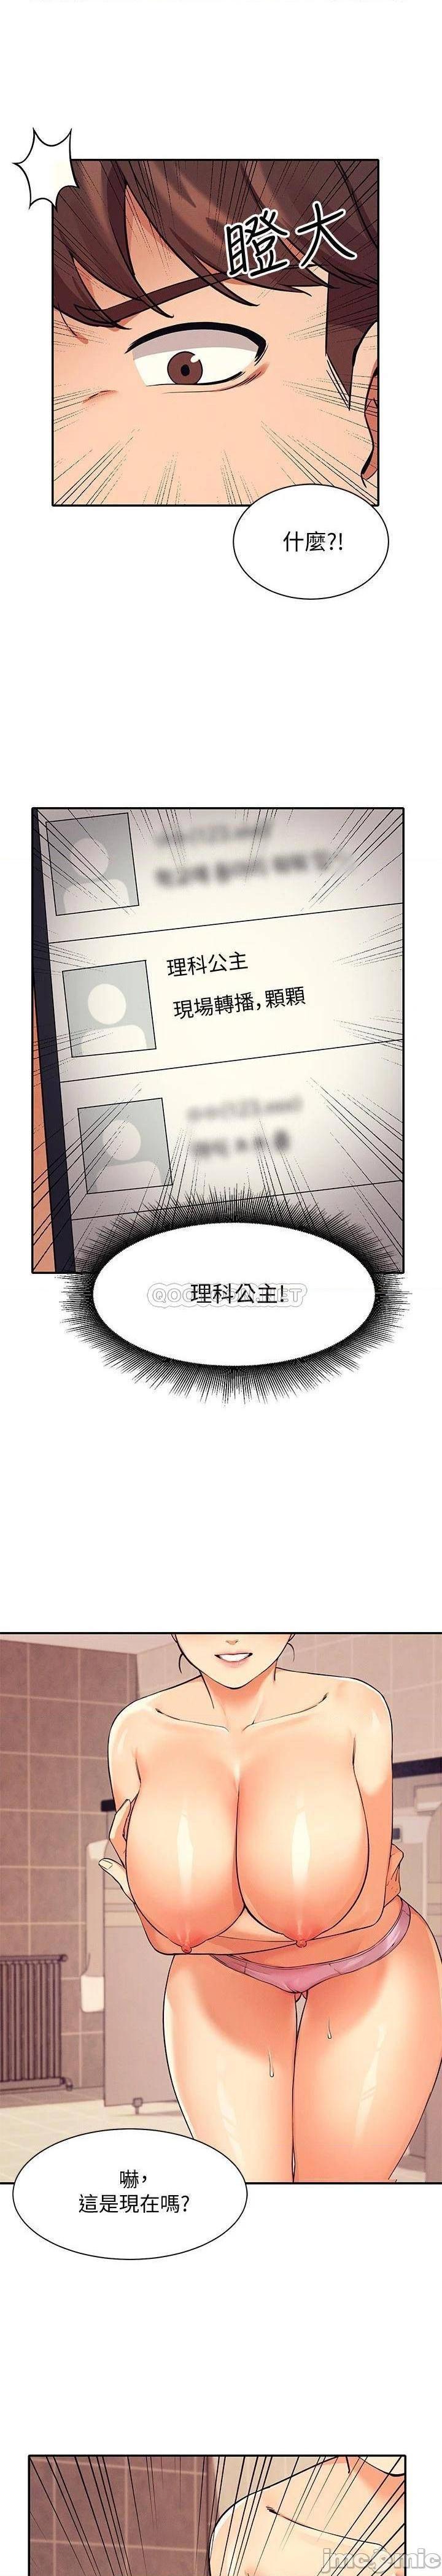 《谁说理组没正妹?》漫画 第15话 男厕裸露现场!